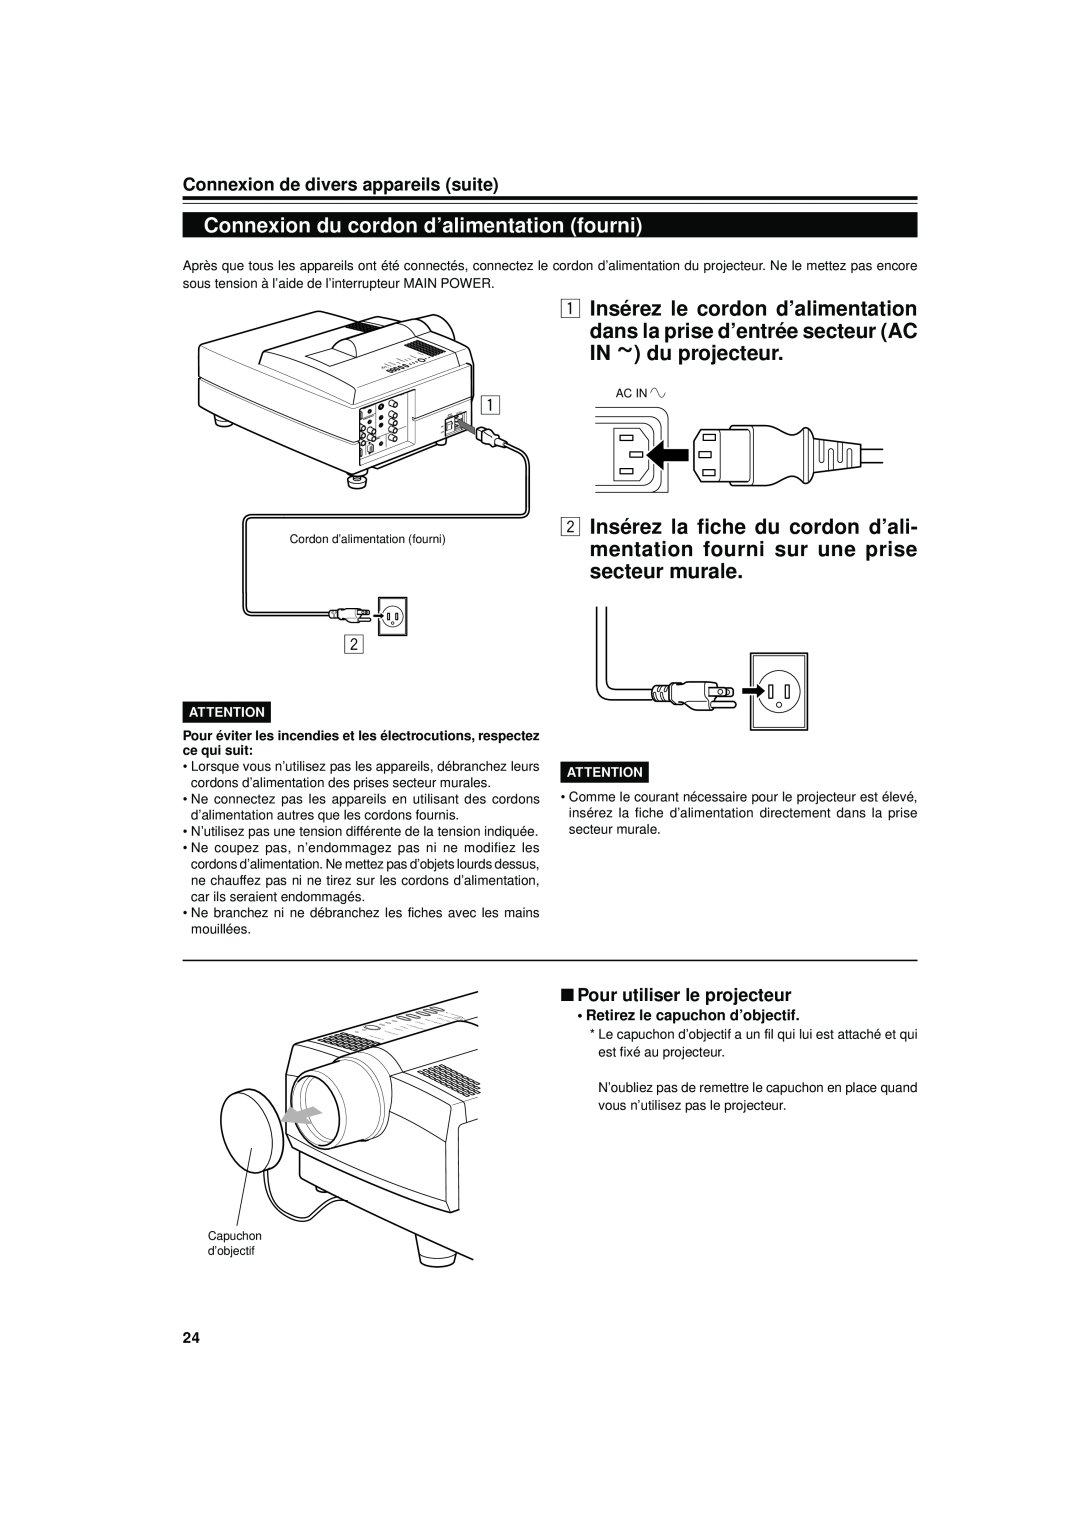 JVC DLA-S15U Connexion du cordon d’alimentation fourni, 1 Insérez le cordon d’alimentation, Pour utiliser le projecteur 